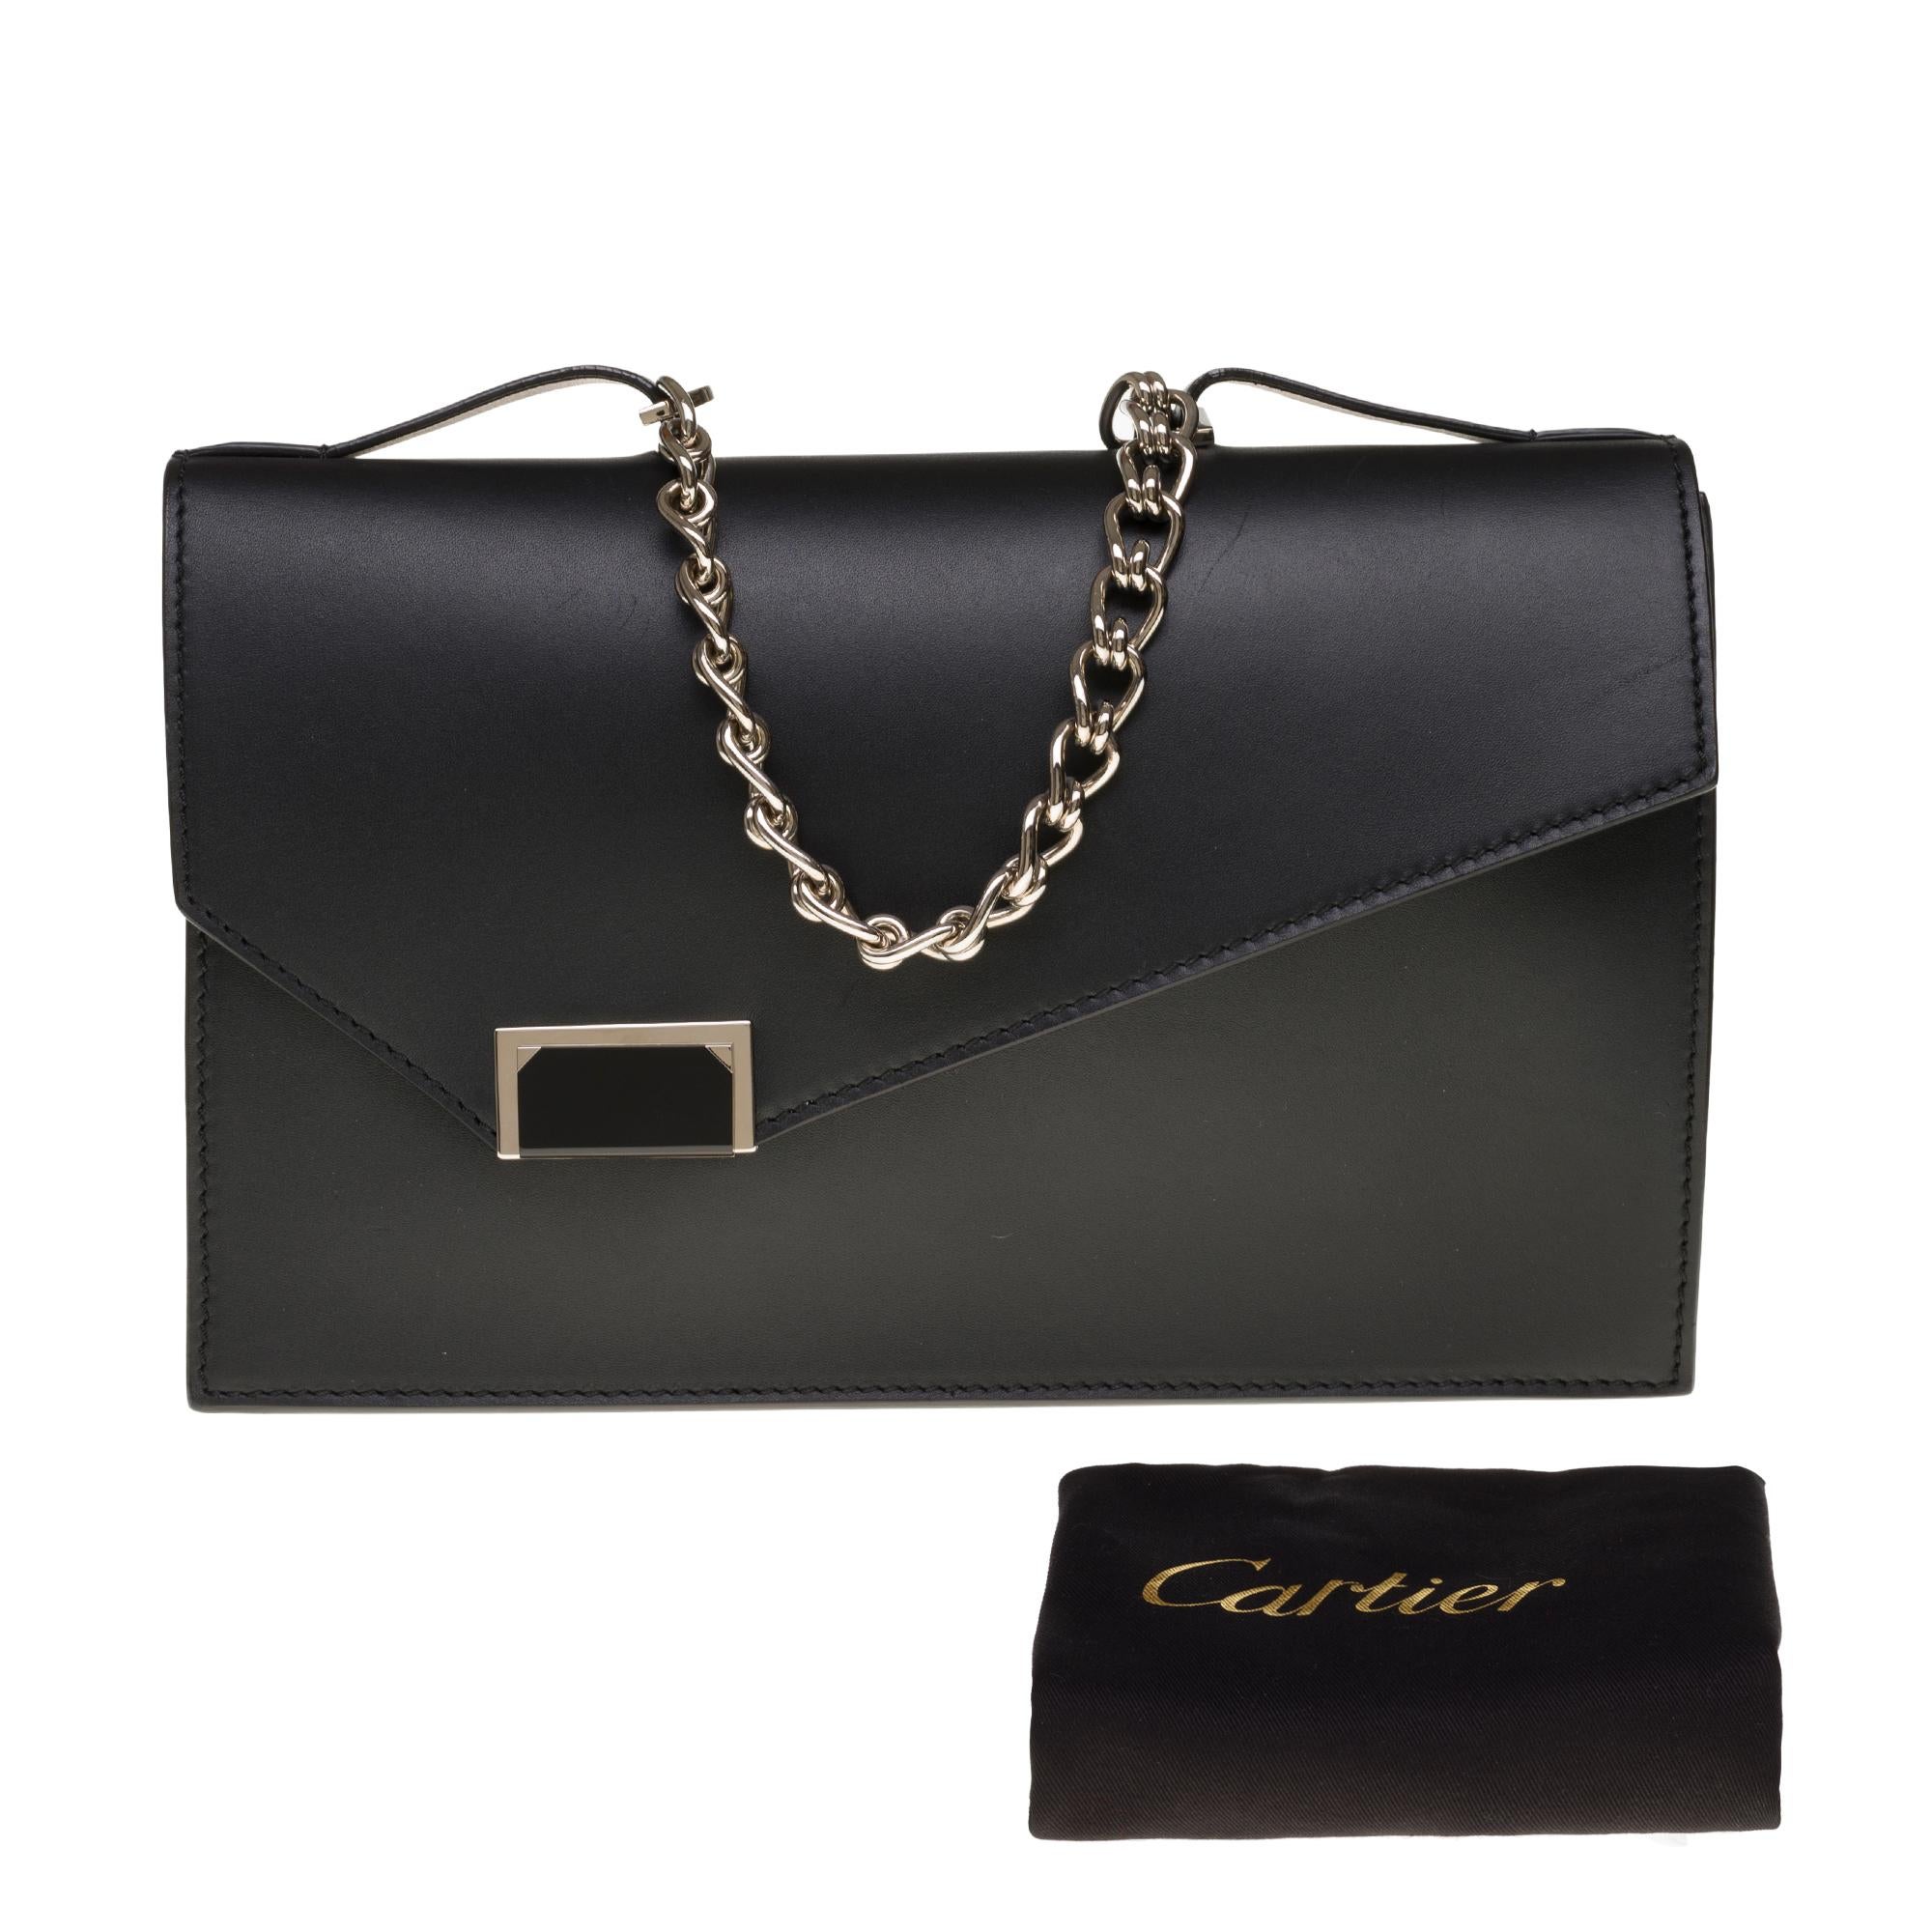 Amazing Cartier handbag/Clutch in black box leather, SHW 5